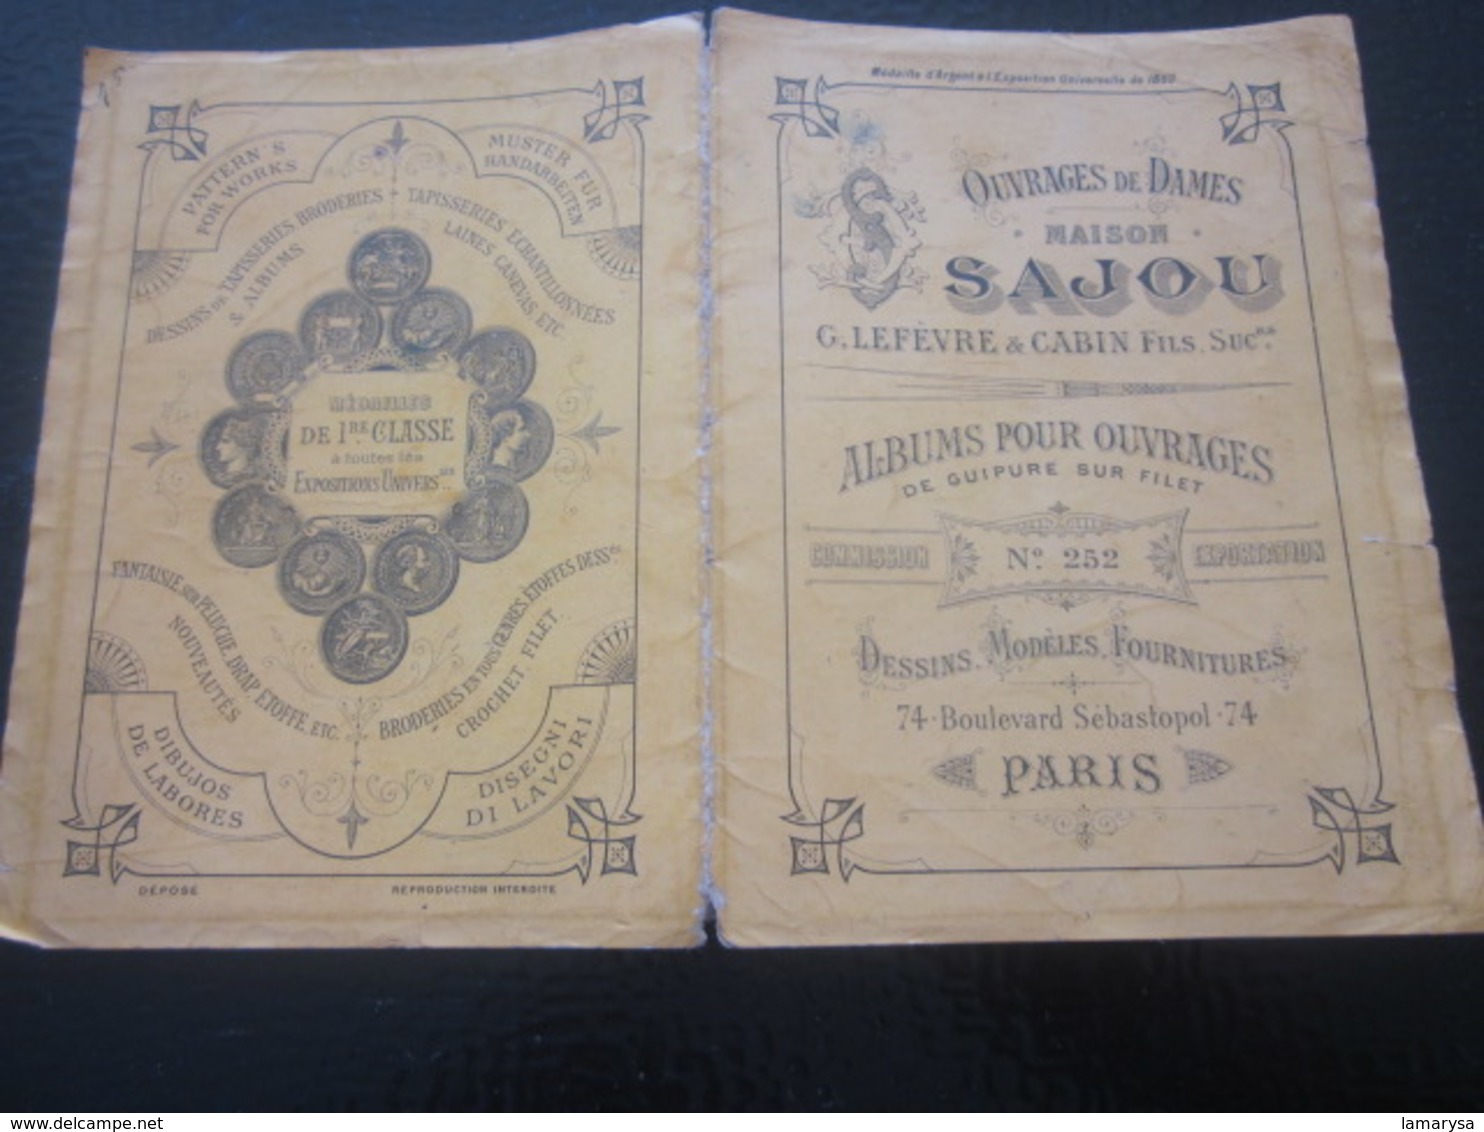 1889 Album Ouvrages de Dames Maison SAJOU Loisirs Créatifs-Guipure s Filet Scrapbooking-Point de croix-Dessins-Modèles